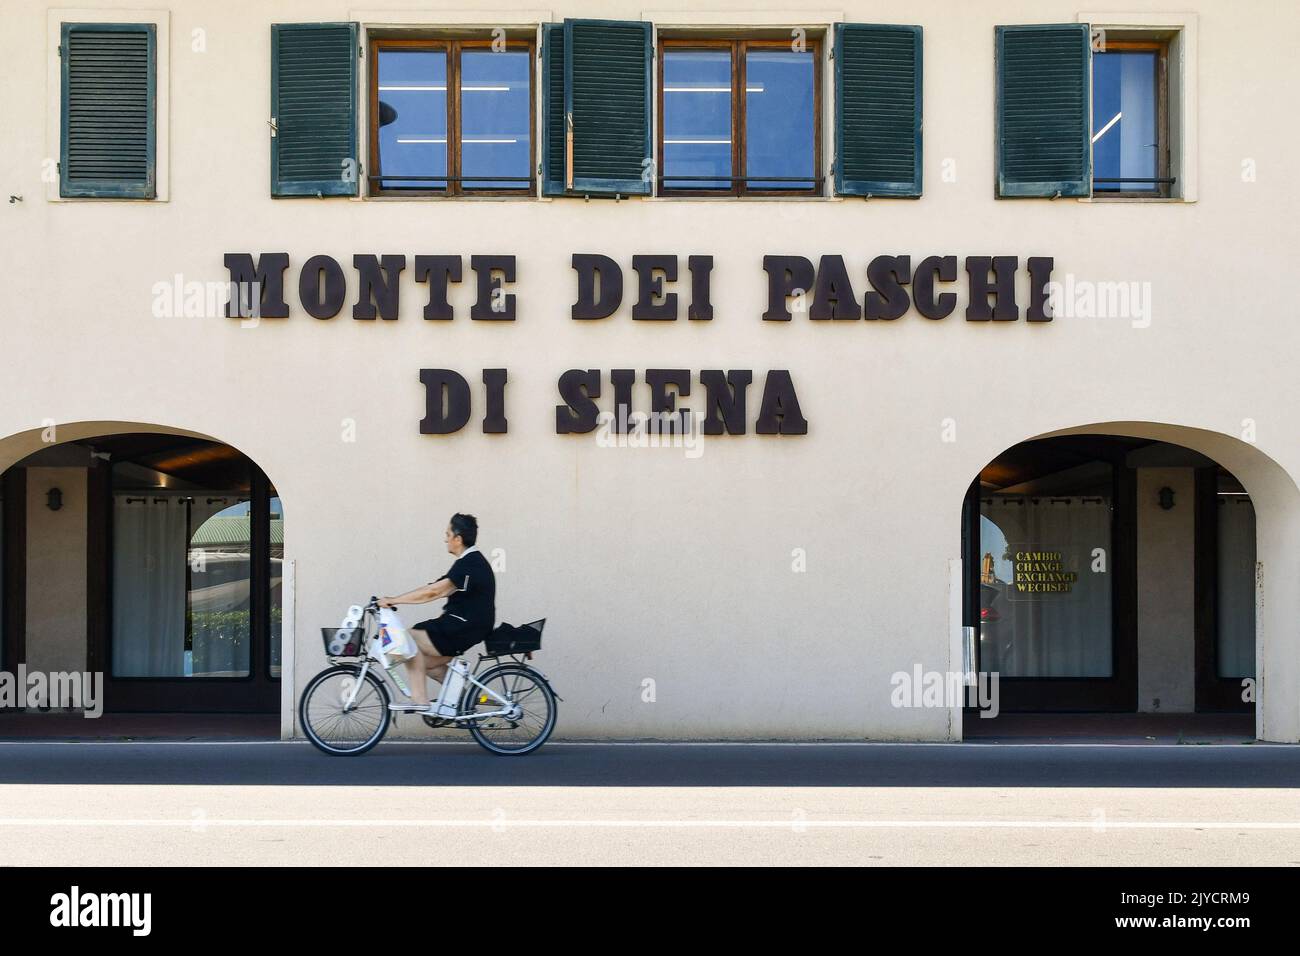 A woman cycling in front of the Monte dei Paschi di Siena Italian bank, Castiglione della Pescaia, Grosseto, Tuscany, Italy Stock Photo